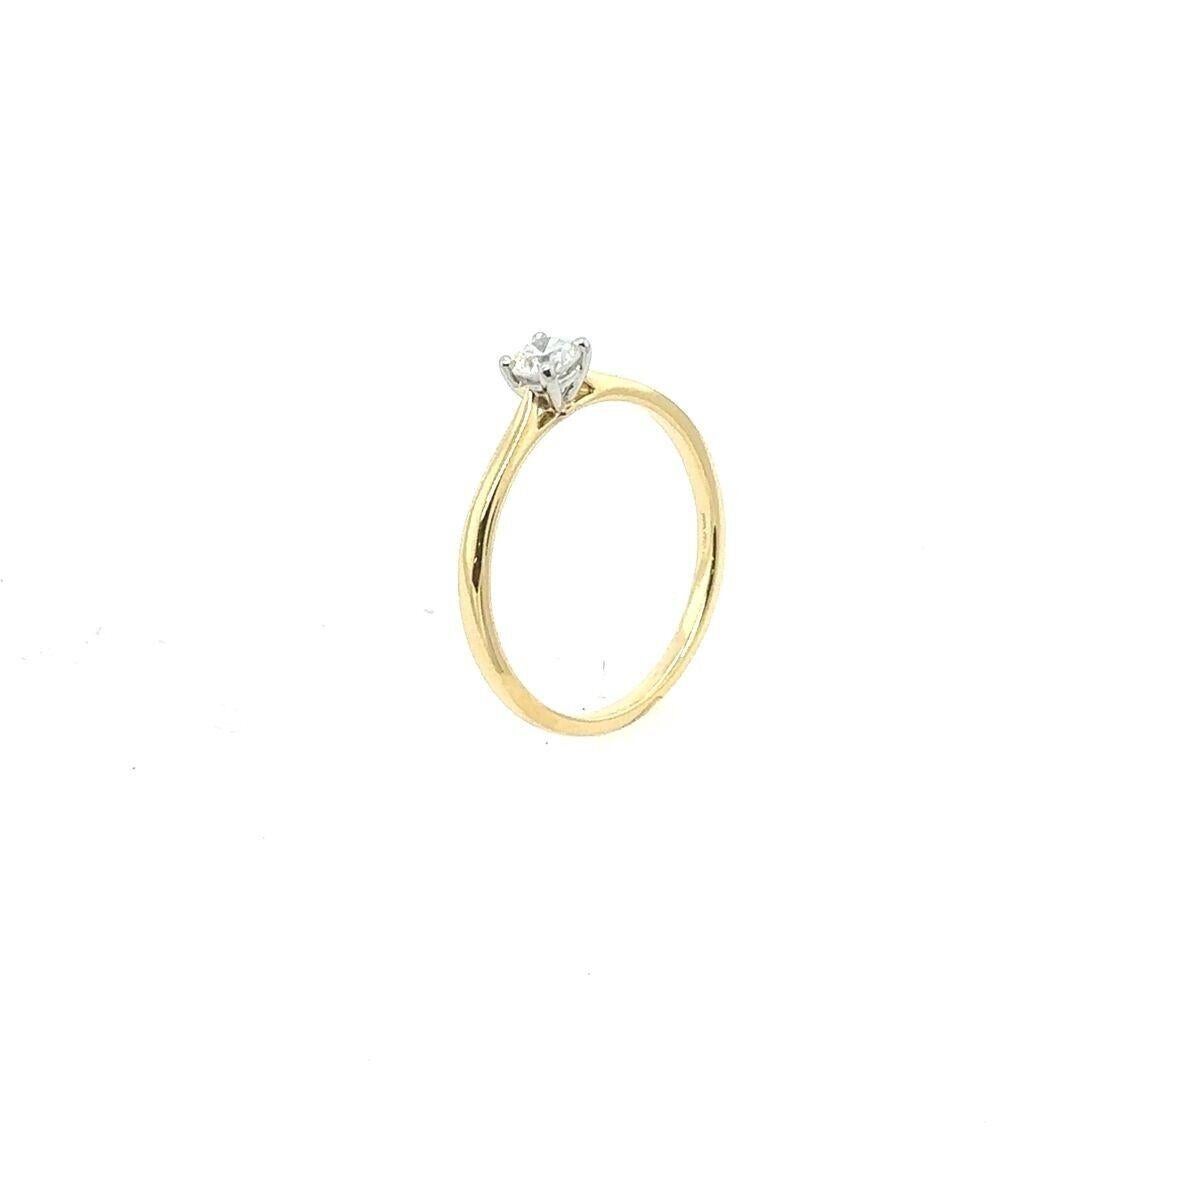 Dieser Solitär-Diamantring aus 18 Karat Gelbgold und Platin ist mit einem runden Diamanten im Brillantschliff von 0,25 Karat besetzt. Fassung aus 18 Karat Gelbgold und Platin. Der Ring ist ein perfektes Symbol für Ihr Engagement in der